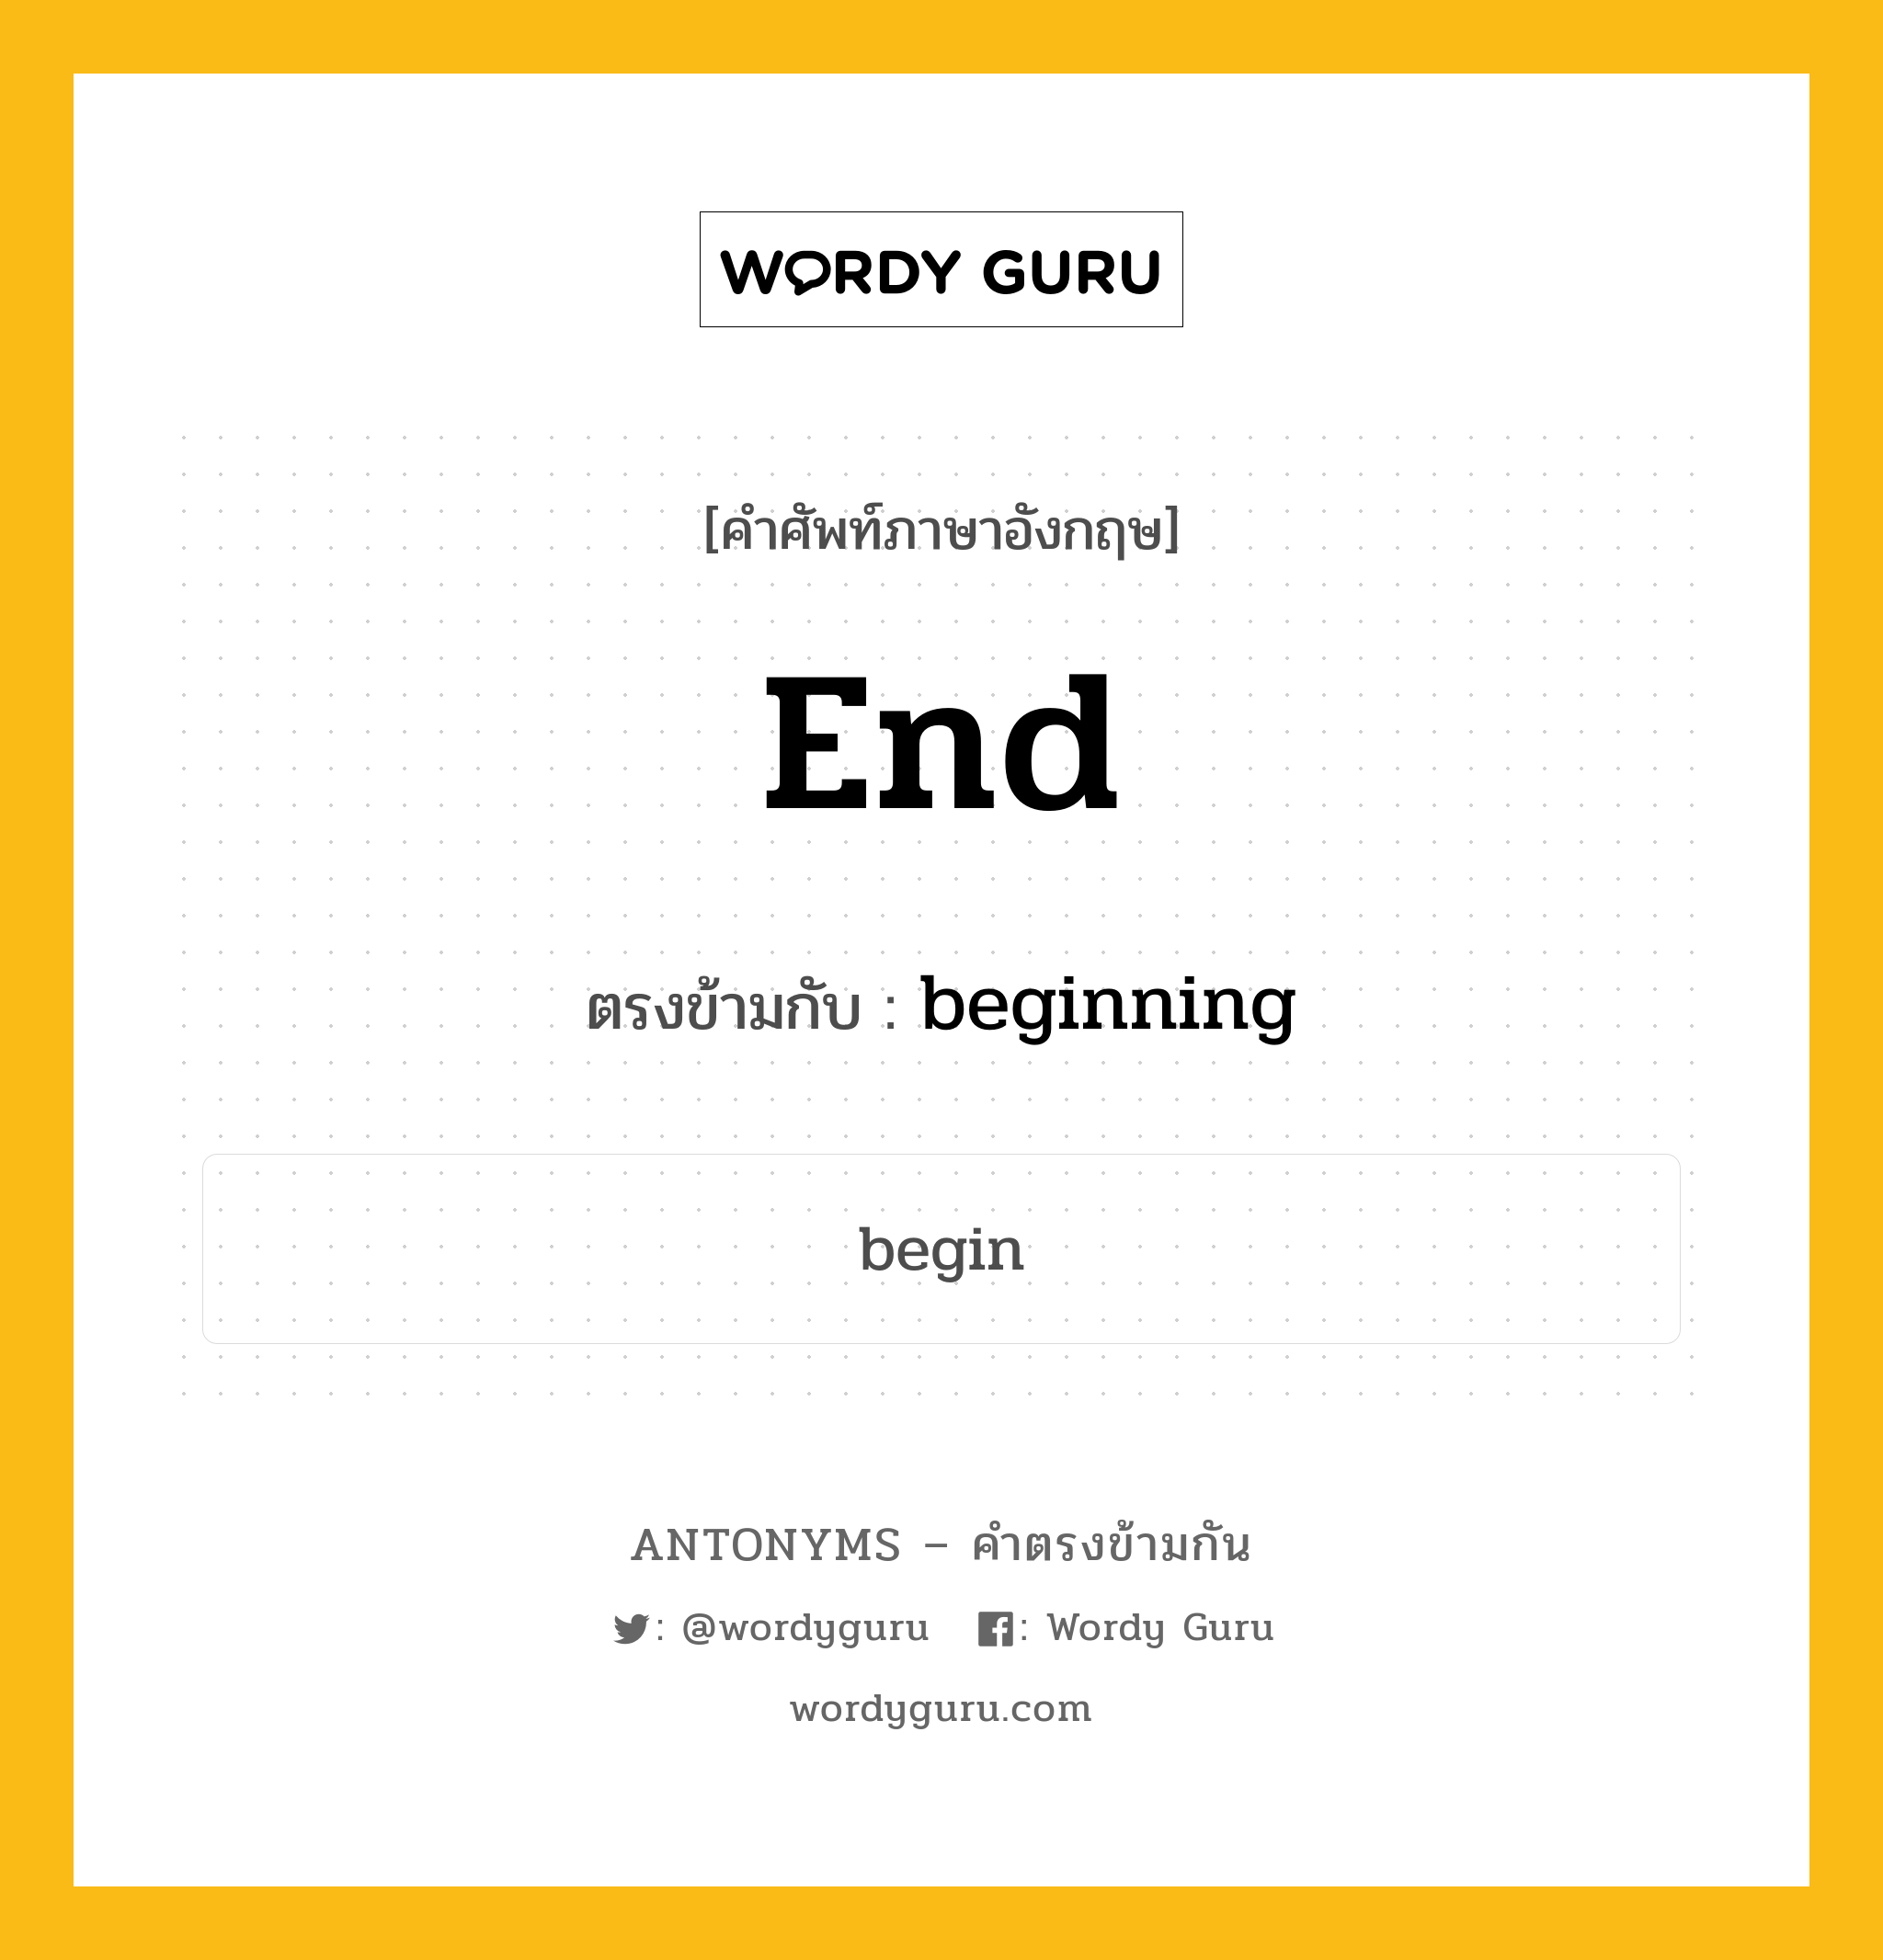 end เป็นคำตรงข้ามกับคำไหนบ้าง?, คำศัพท์ภาษาอังกฤษ end ตรงข้ามกับ beginning หมวด beginning